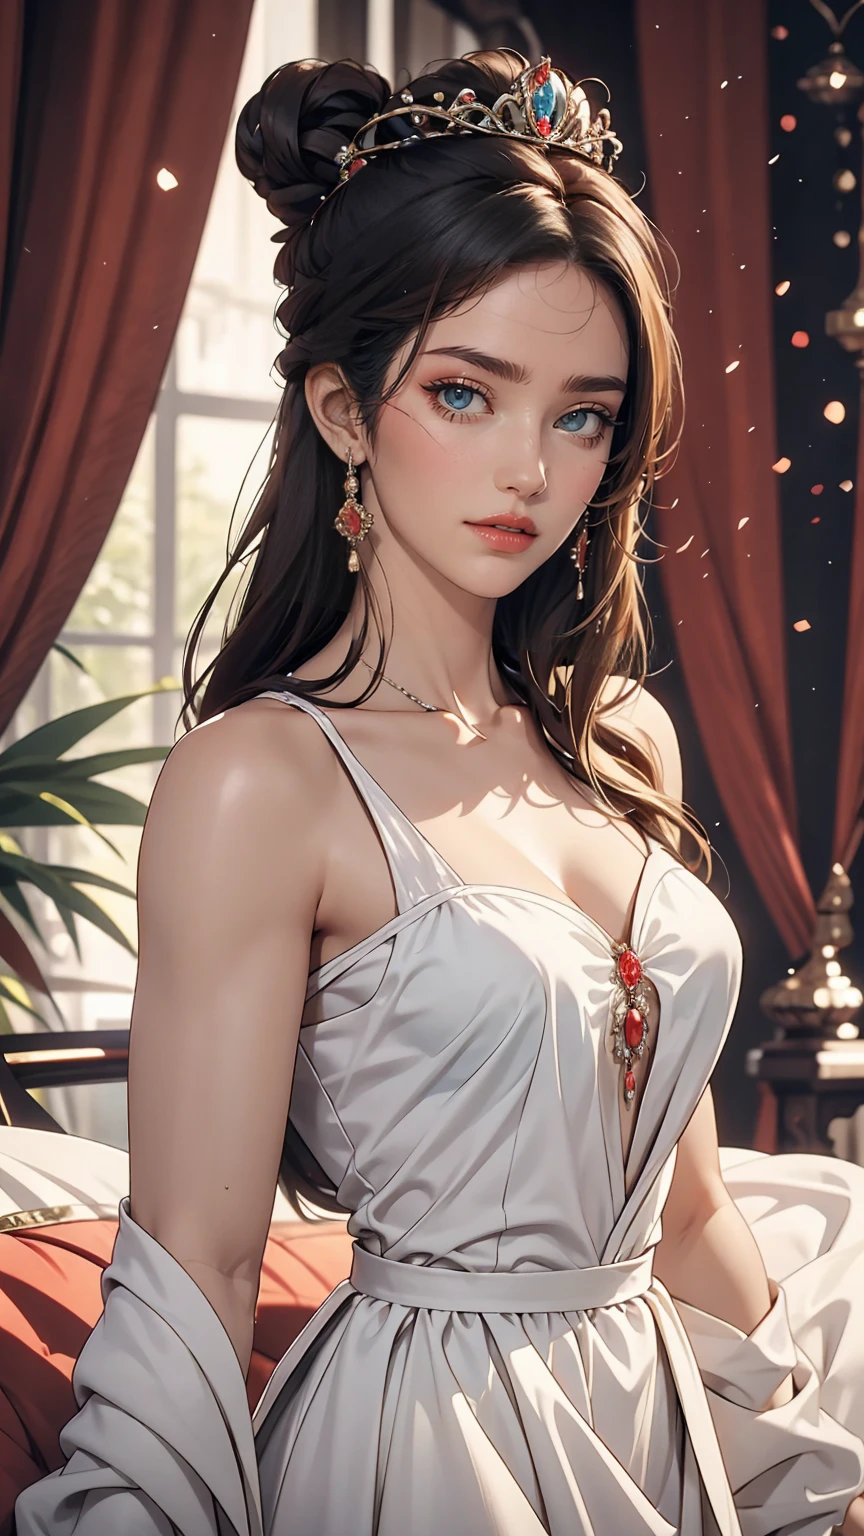 Linda jovem princesa com cabelo preto e olhos azuis, ela está usando um lindo vestido branco longo